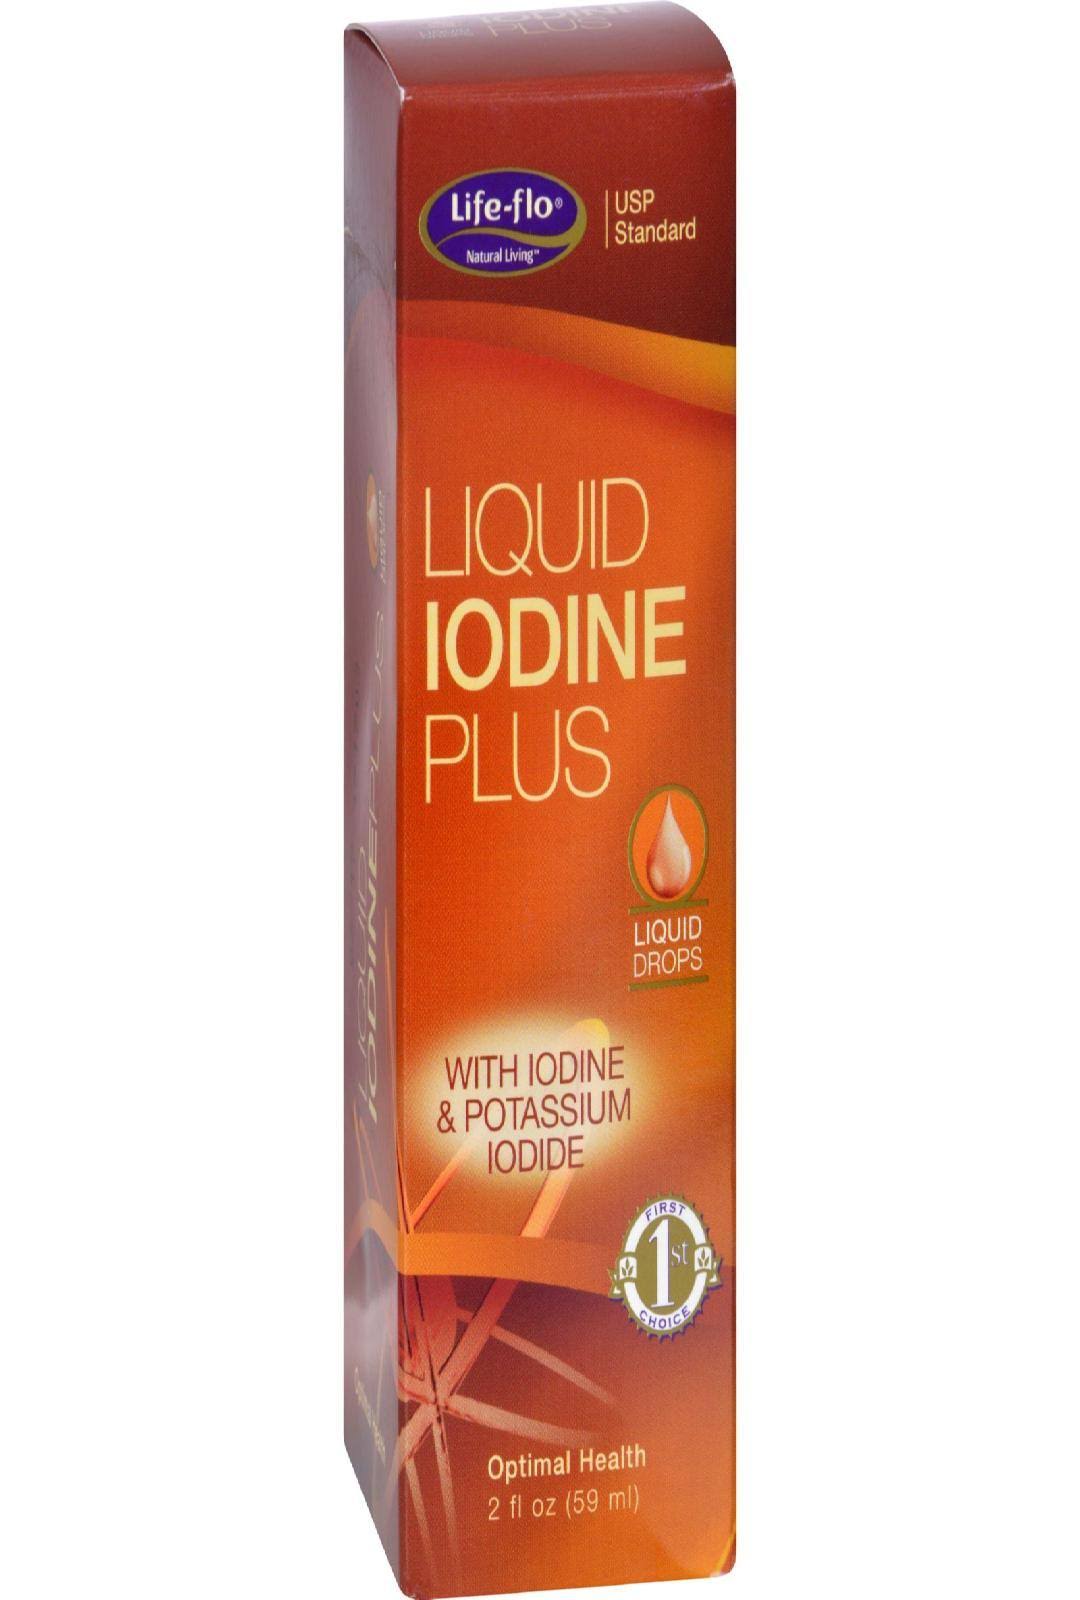 Life-Flo Health Care Liquid Iodine Plus